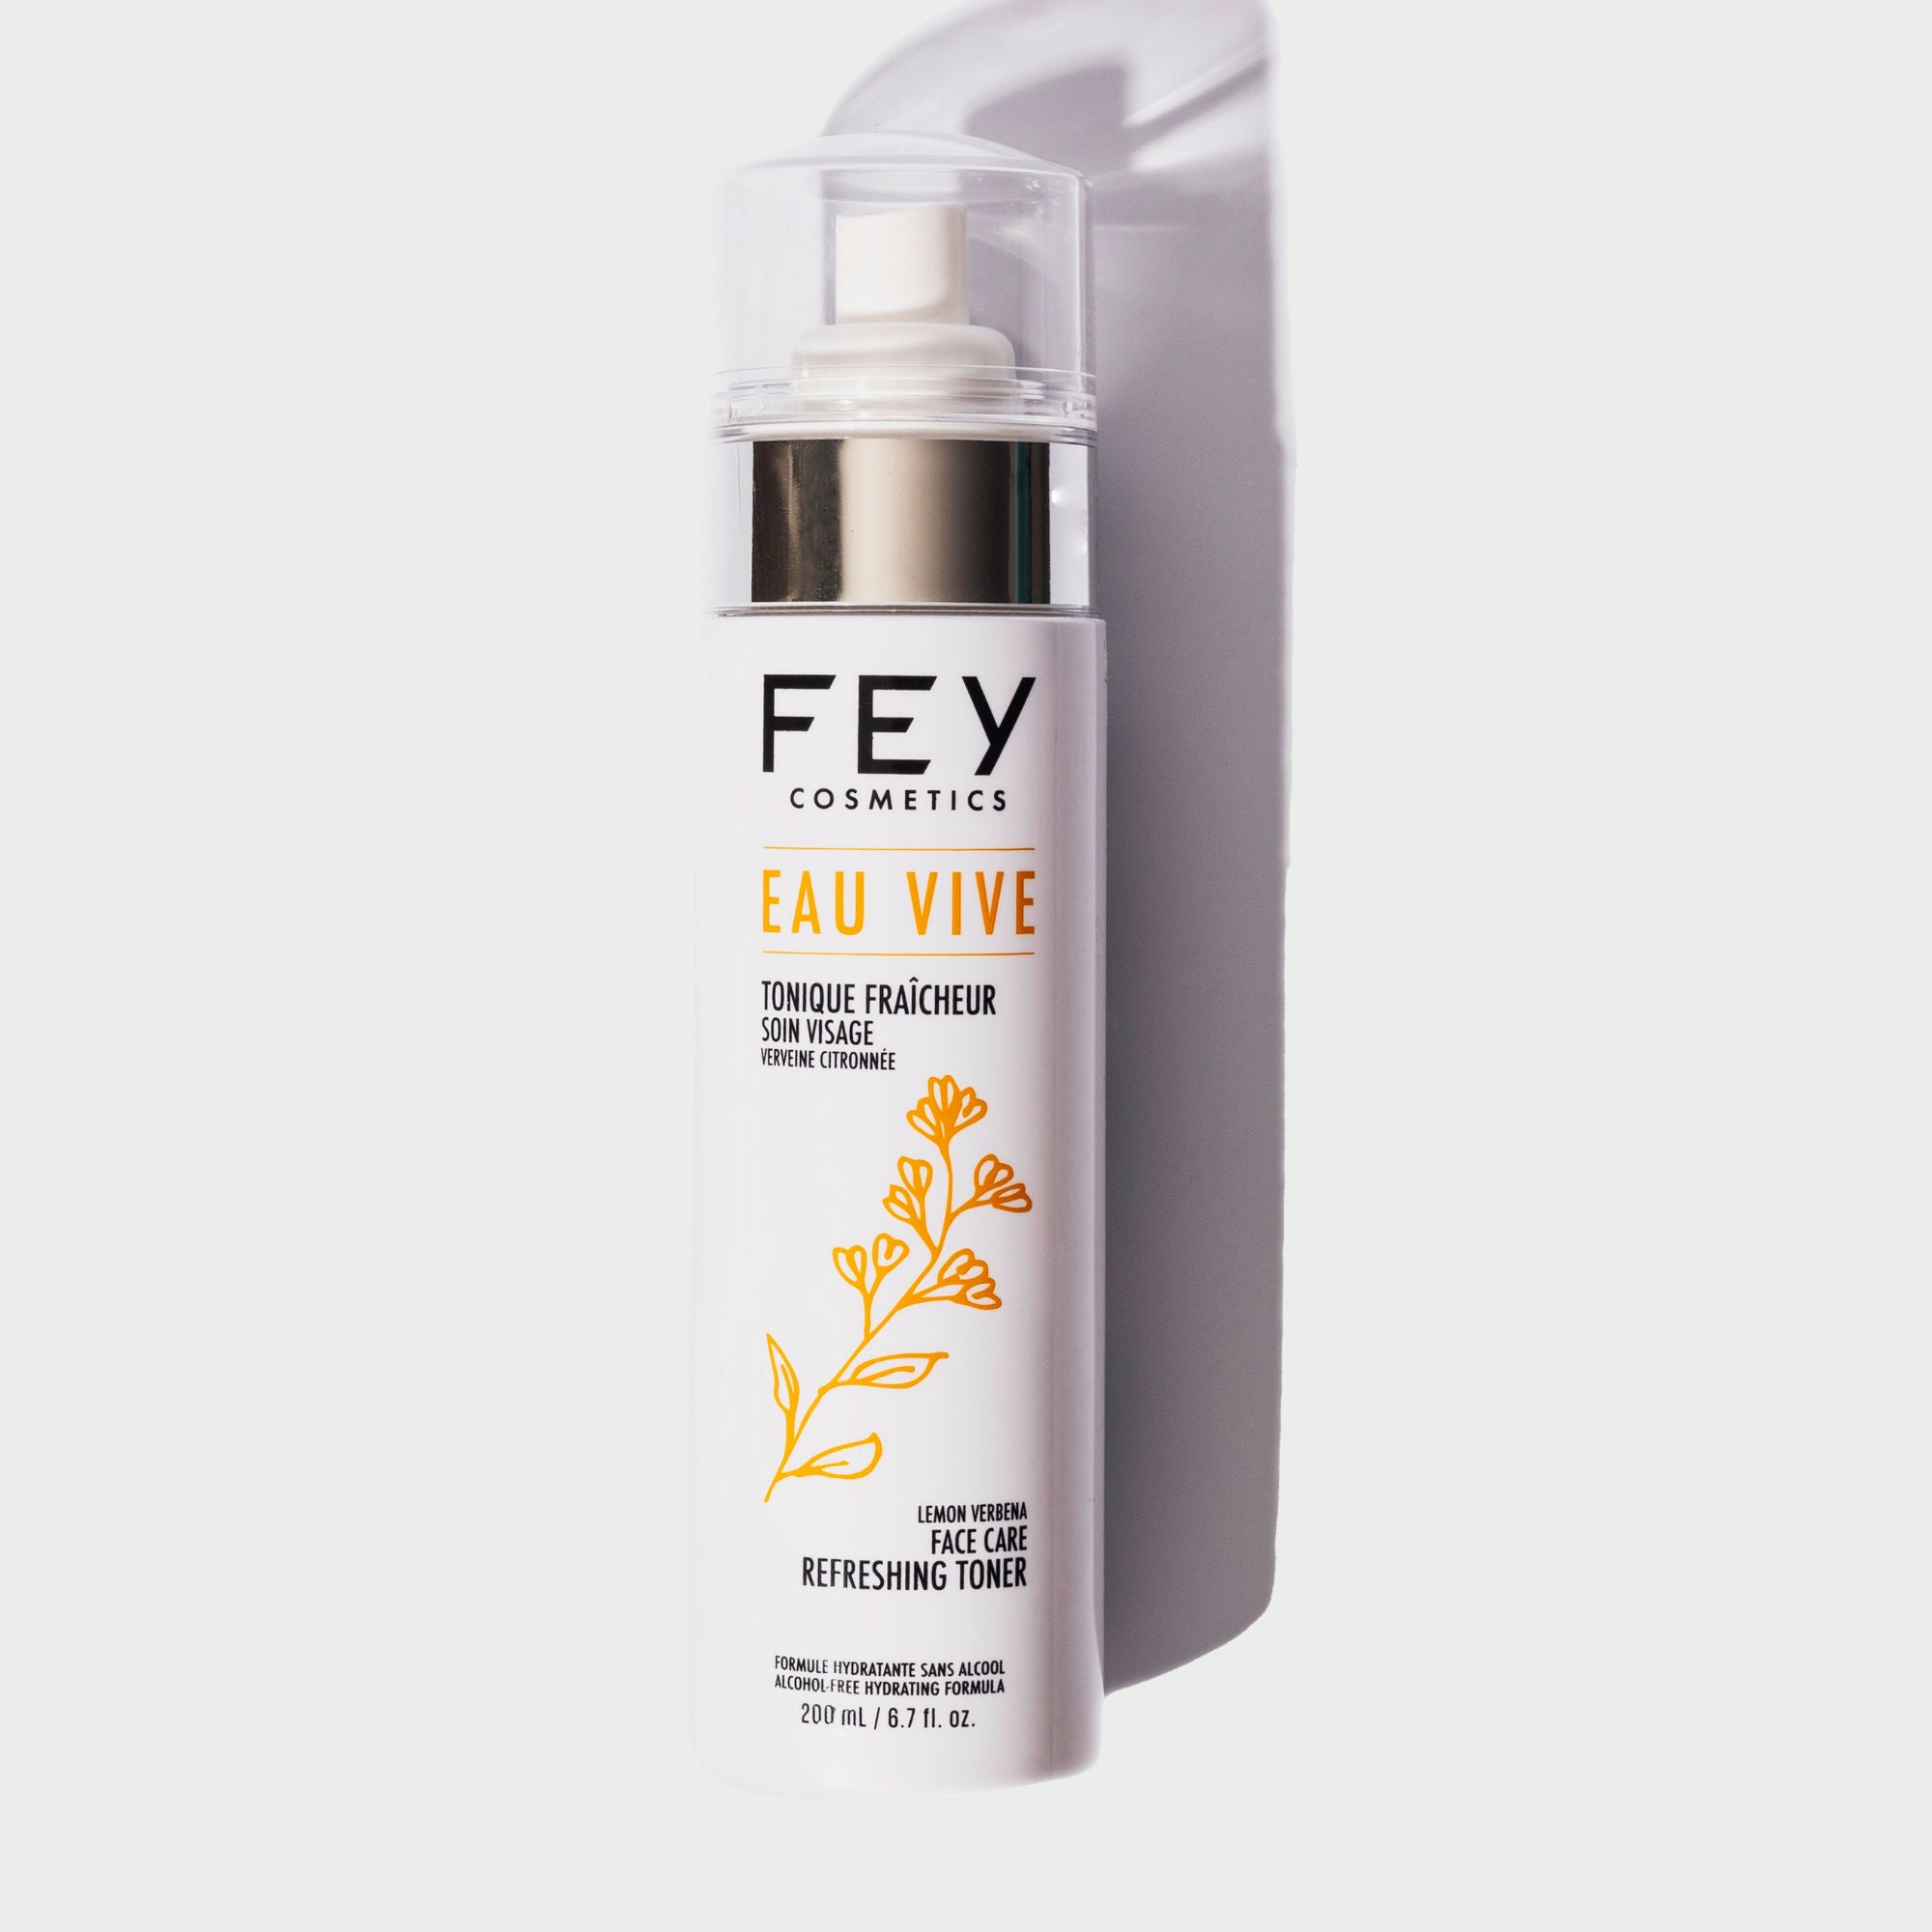 EAU VIVE Best Refreshing and Hydrating Facial Toner | FEY Cosmetics | EAU VIVE La meilleure lotion tonique hydratante fraîcheur - 200 mL